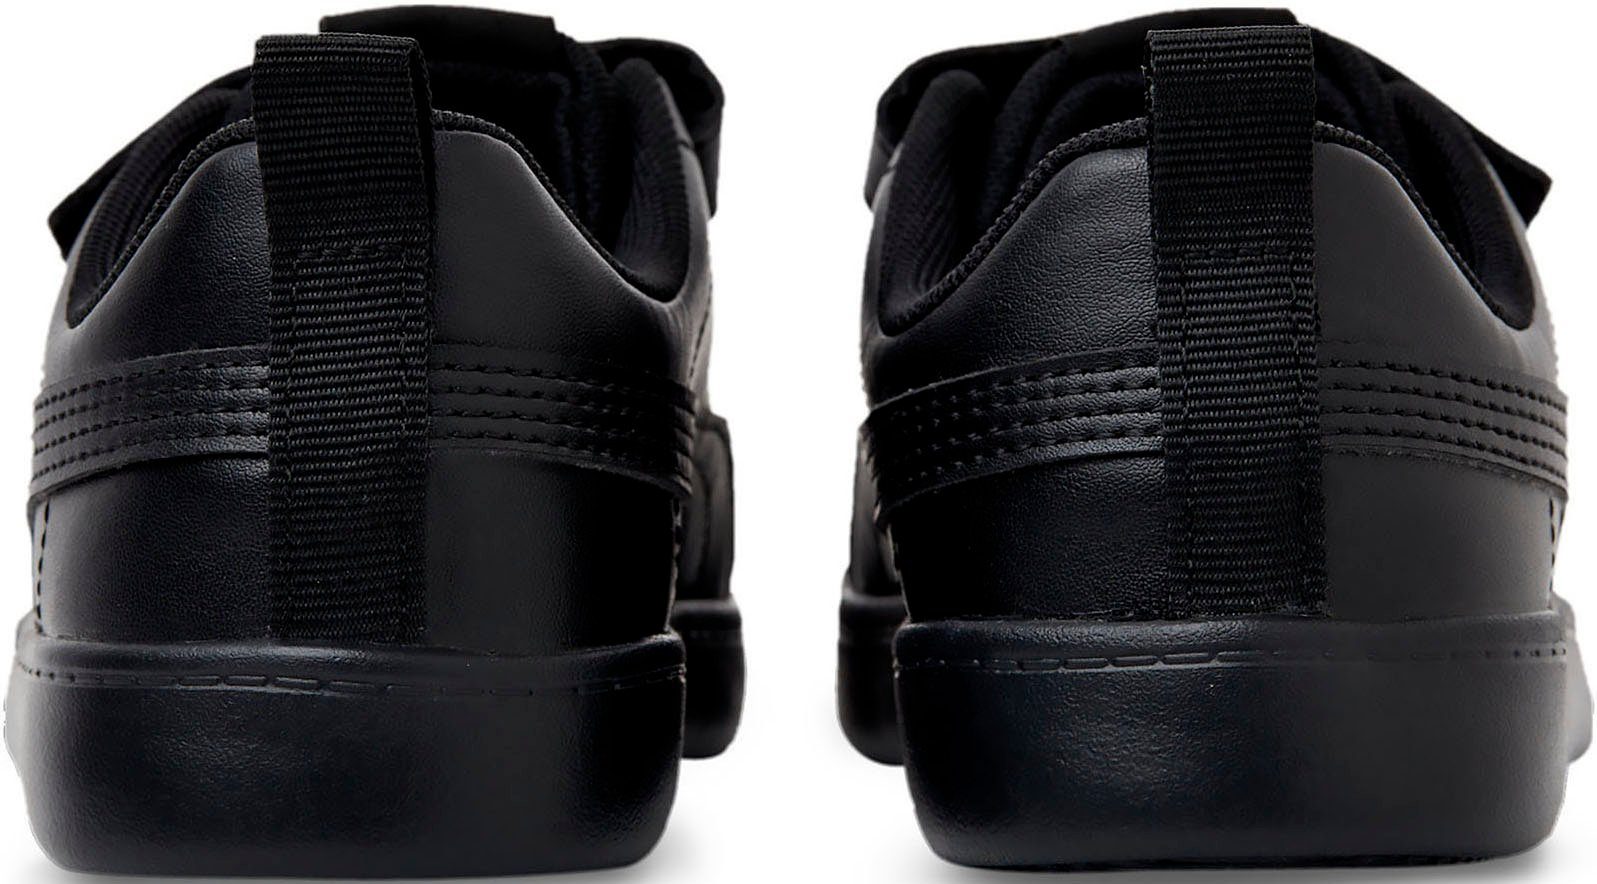 PUMA Courtflex v2 mit für Sneaker V Kinder schwarz Klettverschluss PS